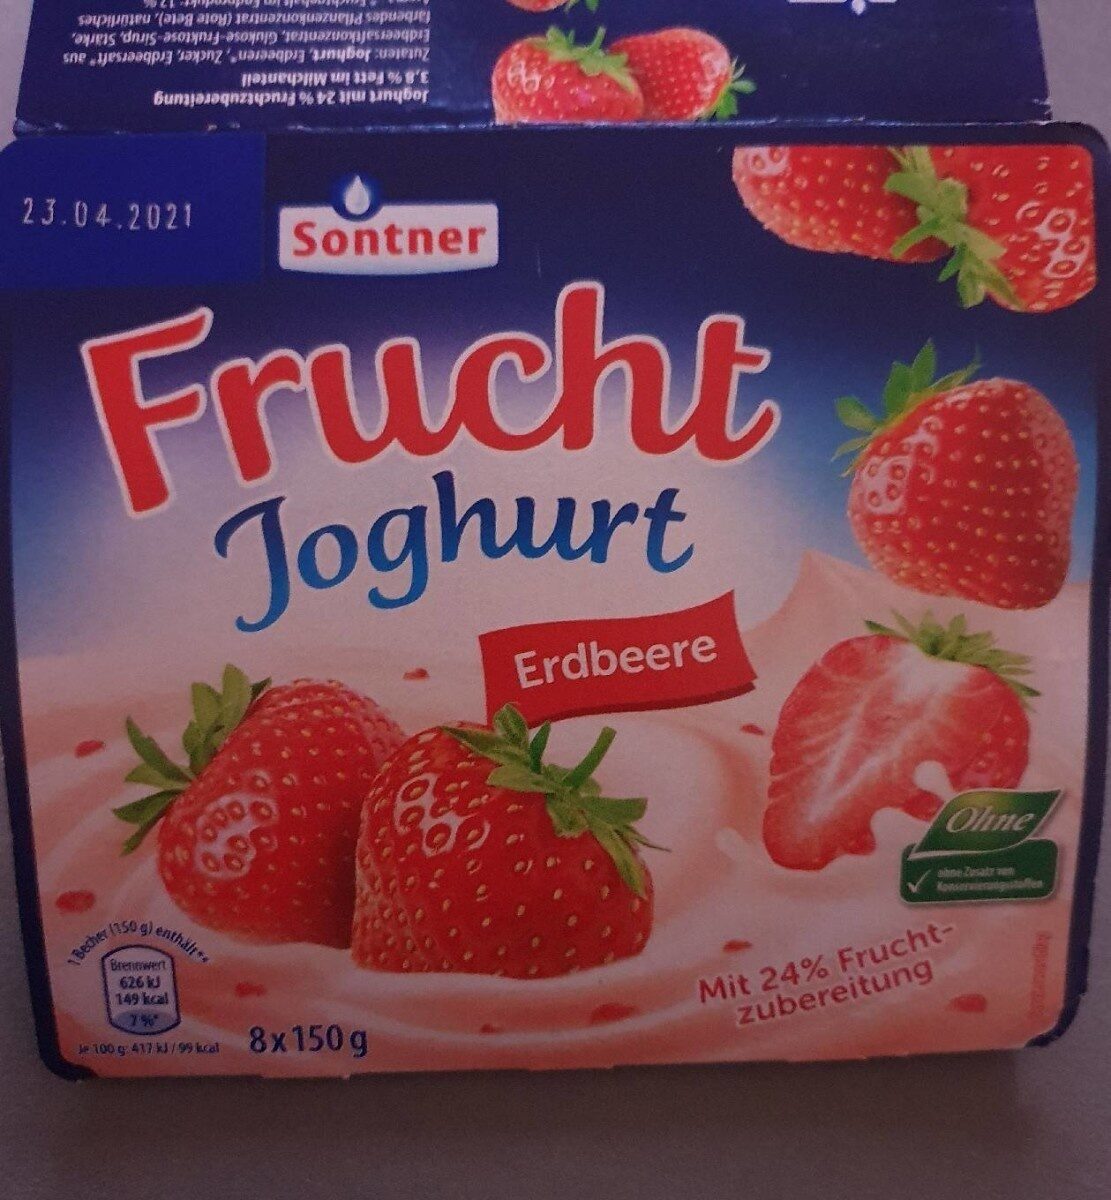 Fruchtjoghurt Erdbeere - Produkt - de